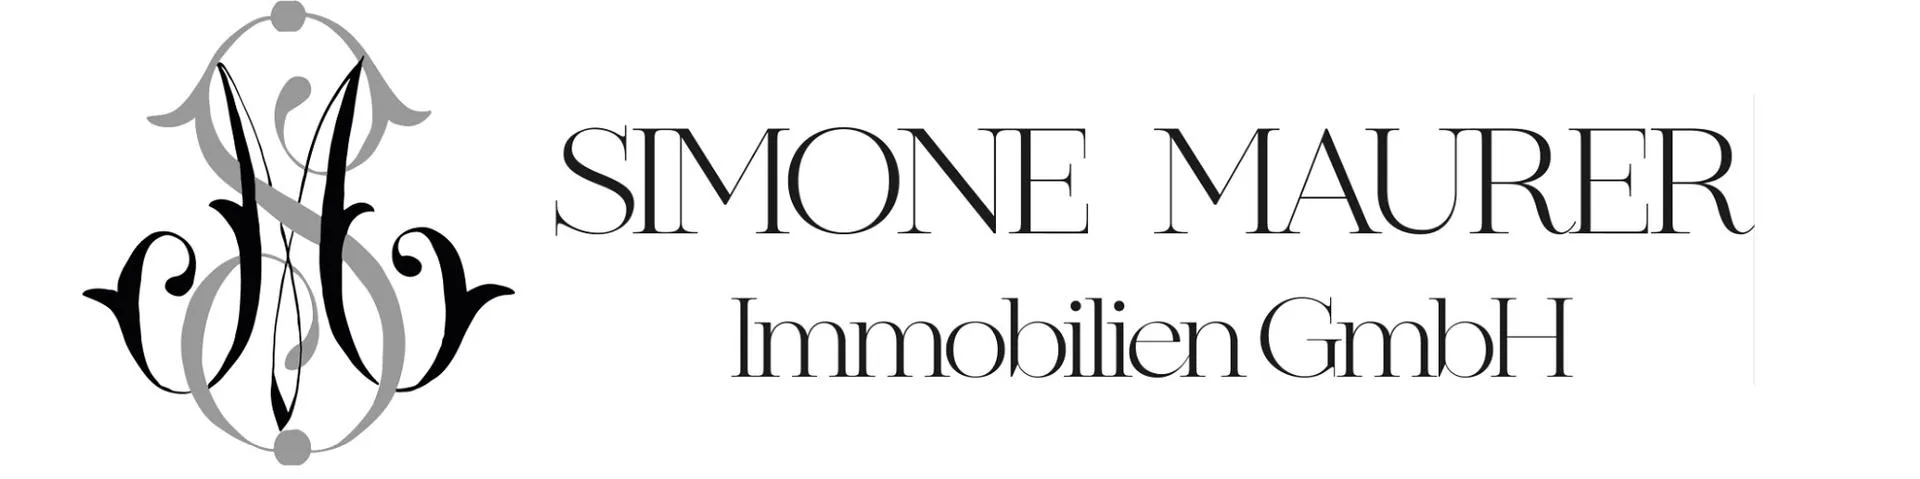 Makler Simone Maurer Immobilien GmbH logo